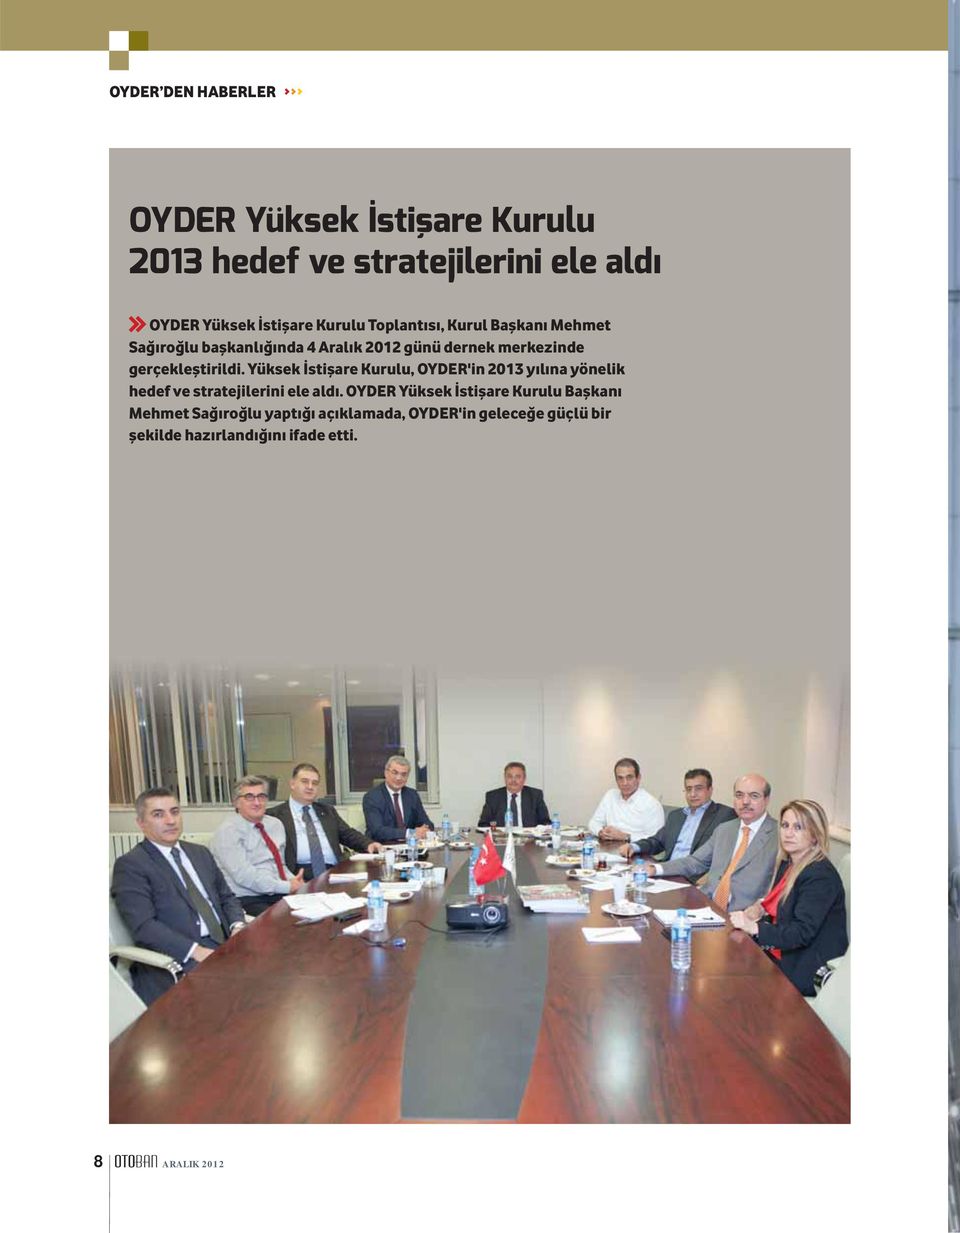 Yüksek İstişare Kurulu, OYDER'in 2013 yılına yönelik hedef ve stratejilerini ele aldı.